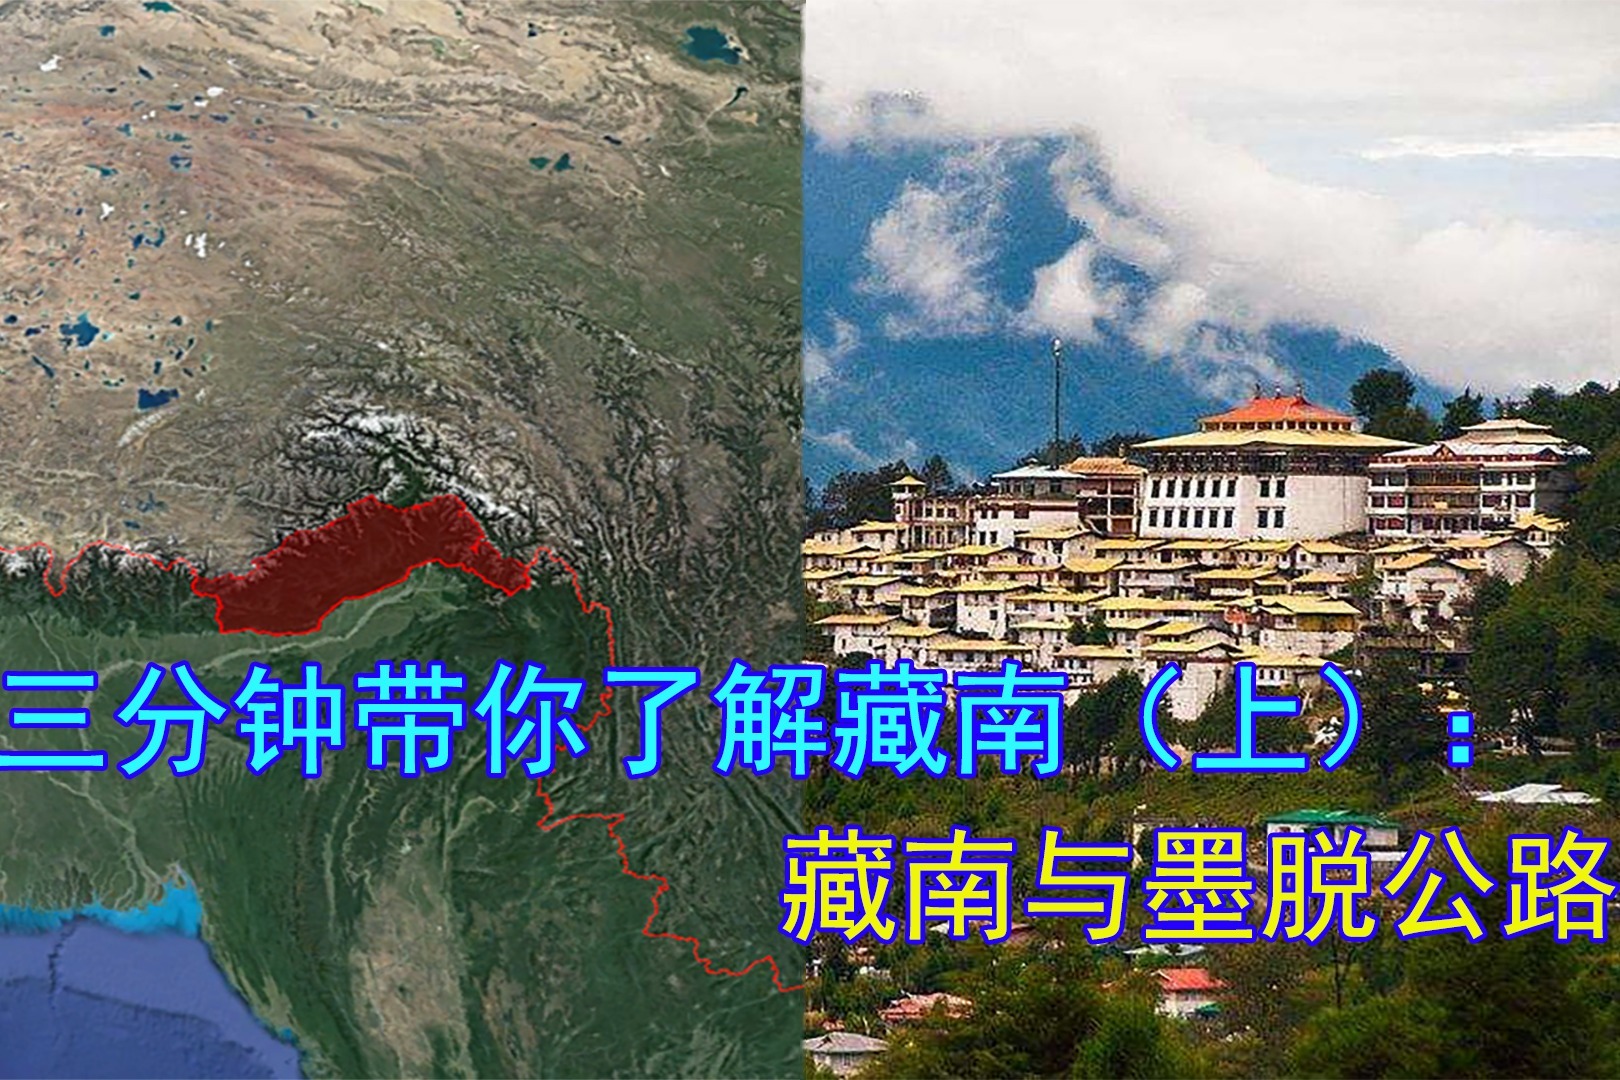 藏南地区图图片